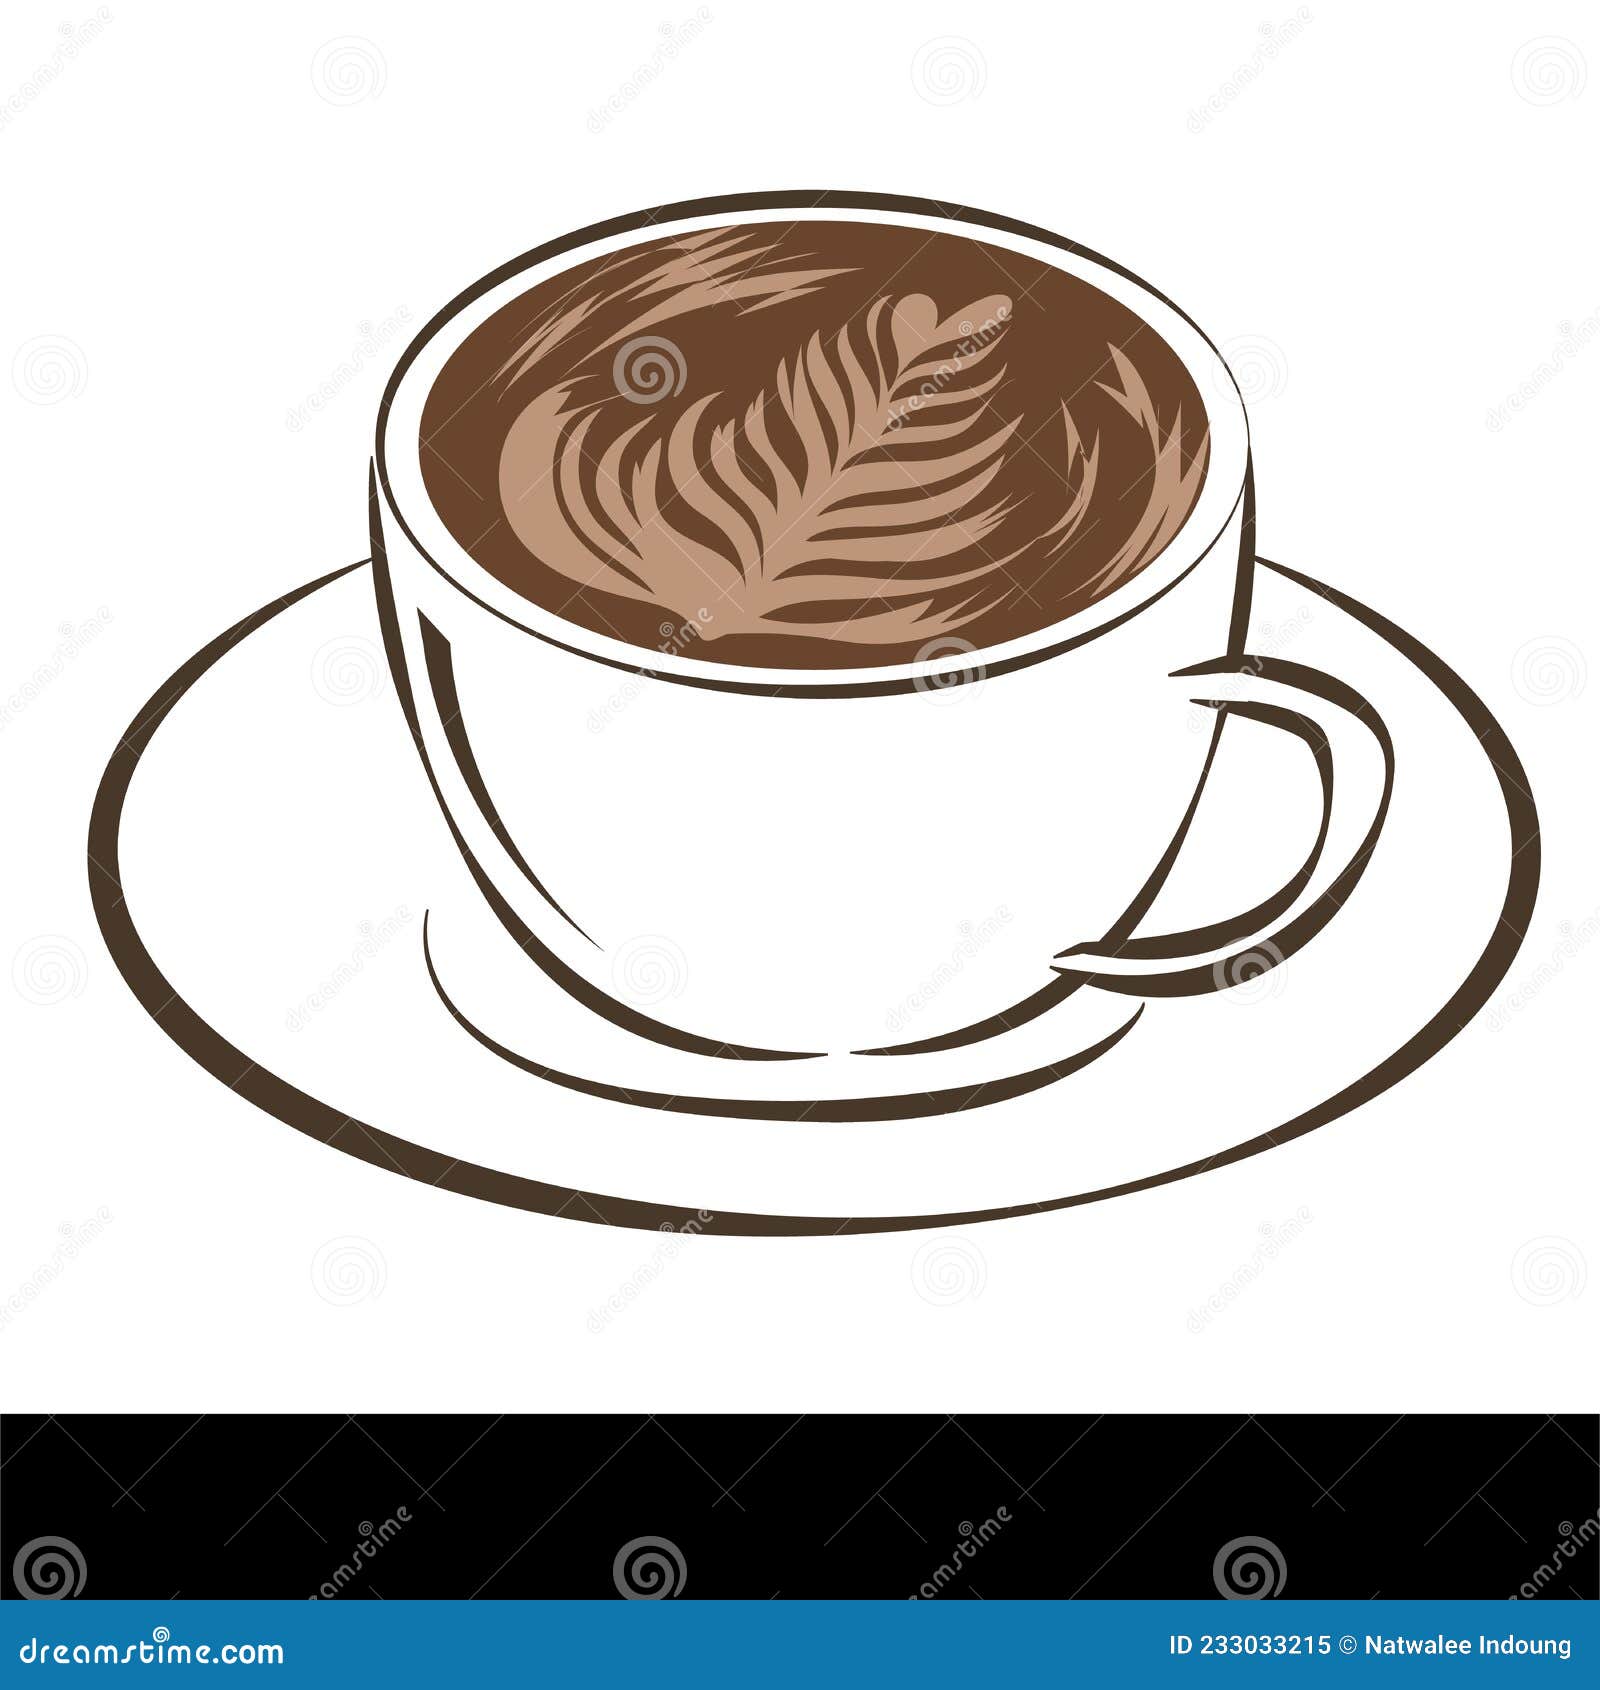 Một chiếc cốc cà phê với hình khắc Latte Art sẽ mang đến cho bạn sự lãng mạn và đẹp mắt khi thưởng thức một tách cà phê thơm ngon vào buổi sáng. Hãy xem bức ảnh để khám phá vẻ đẹp tuyệt vời của cốc cà phê này và cảm nhận niềm đam mê của người thợ pha cà phê.